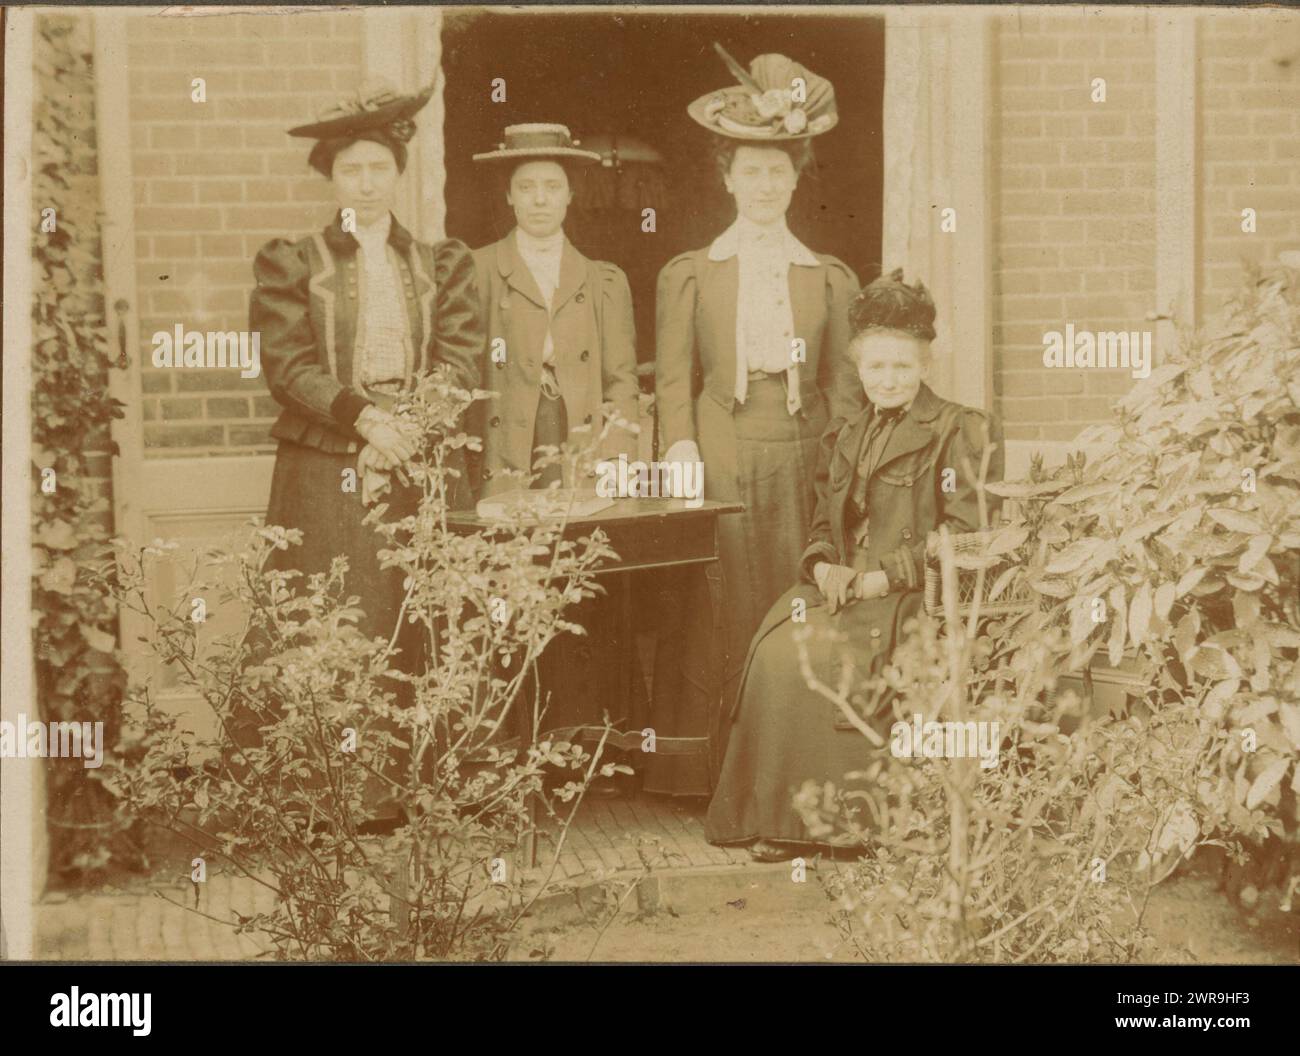 Ritratto di gruppo di quattro donne sconosciute in un giardino, anonimo, Paesi Bassi, c. 1895 - c. 1905, carta baryta, altezza 147 mm x larghezza 178 mm, fotografia Foto Stock